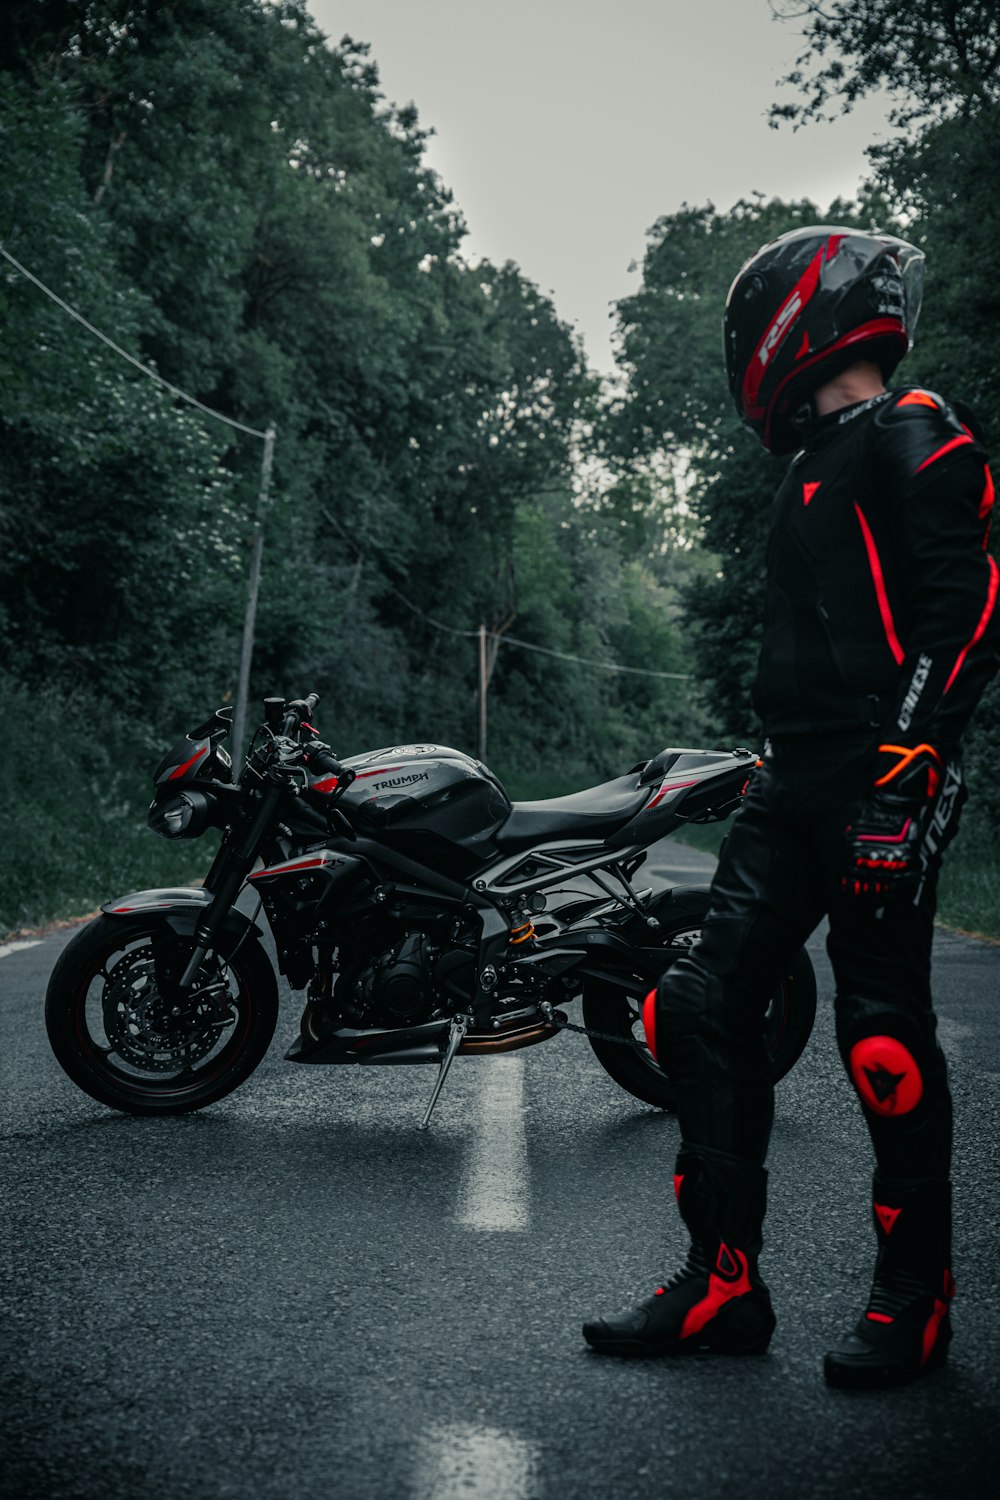 man in black jacket riding black motorcycle